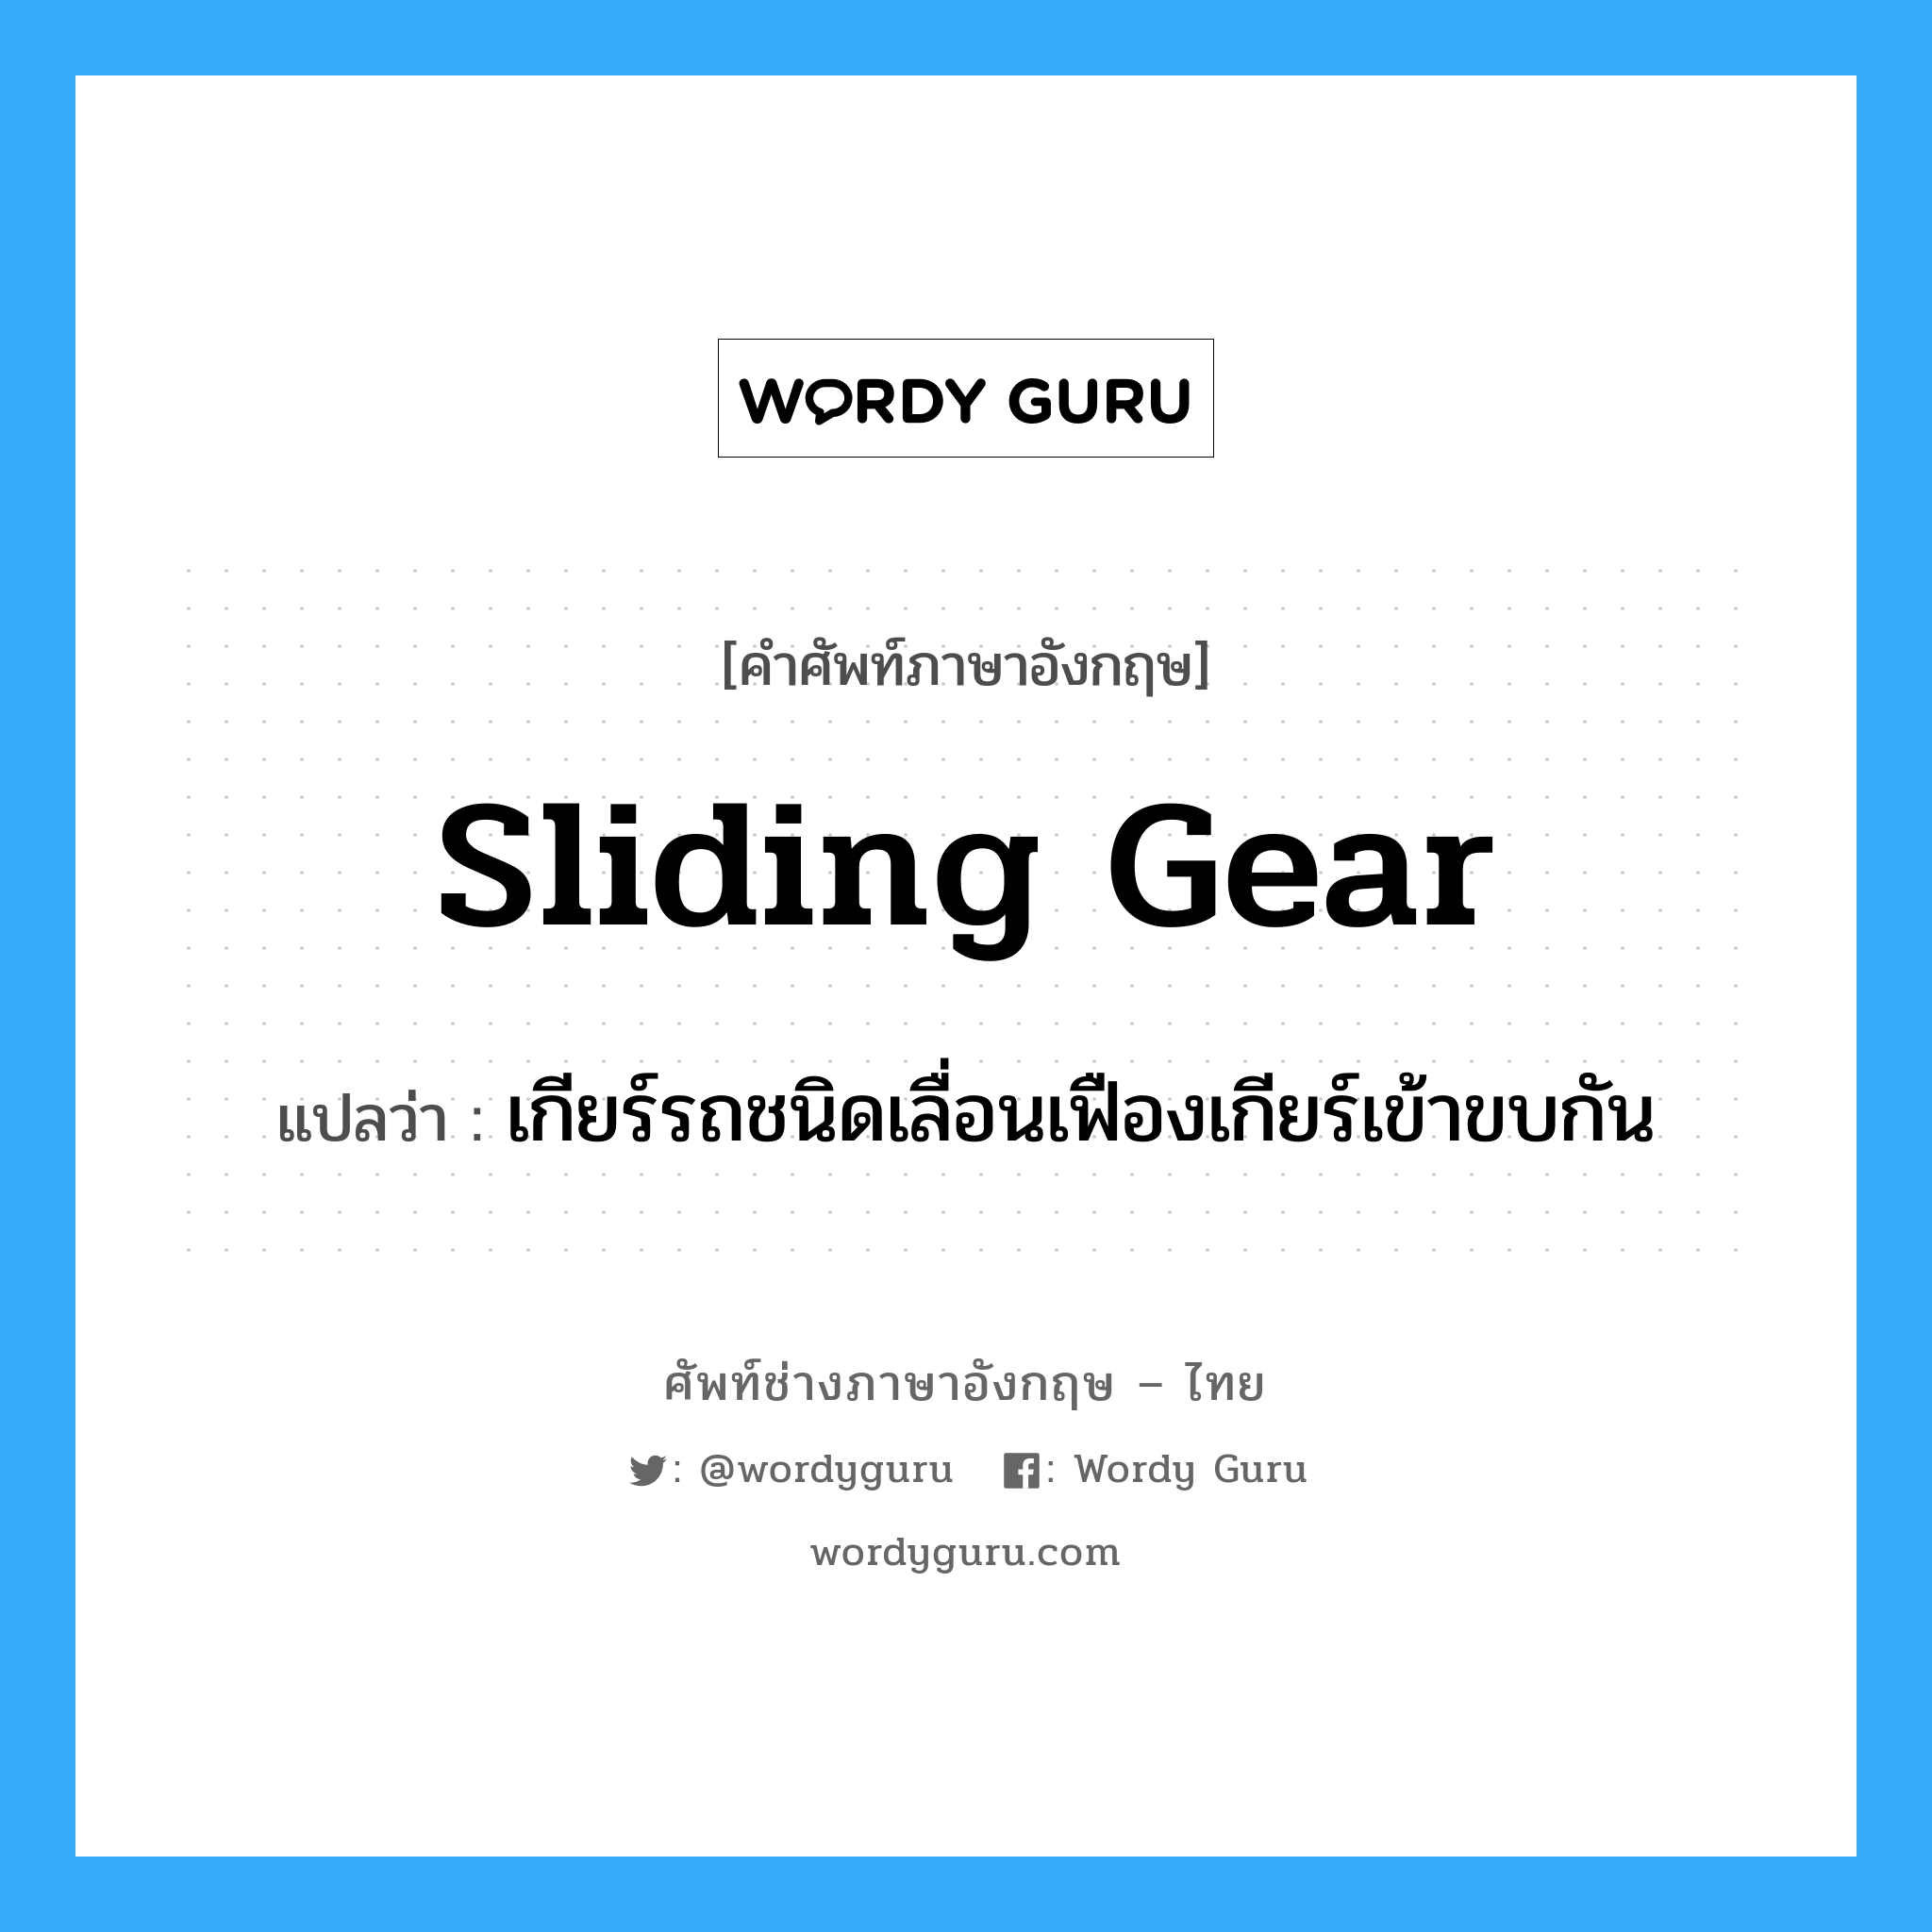 sliding gear แปลว่า?, คำศัพท์ช่างภาษาอังกฤษ - ไทย sliding gear คำศัพท์ภาษาอังกฤษ sliding gear แปลว่า เกียร์รถชนิดเลื่อนเฟืองเกียร์เข้าขบกัน